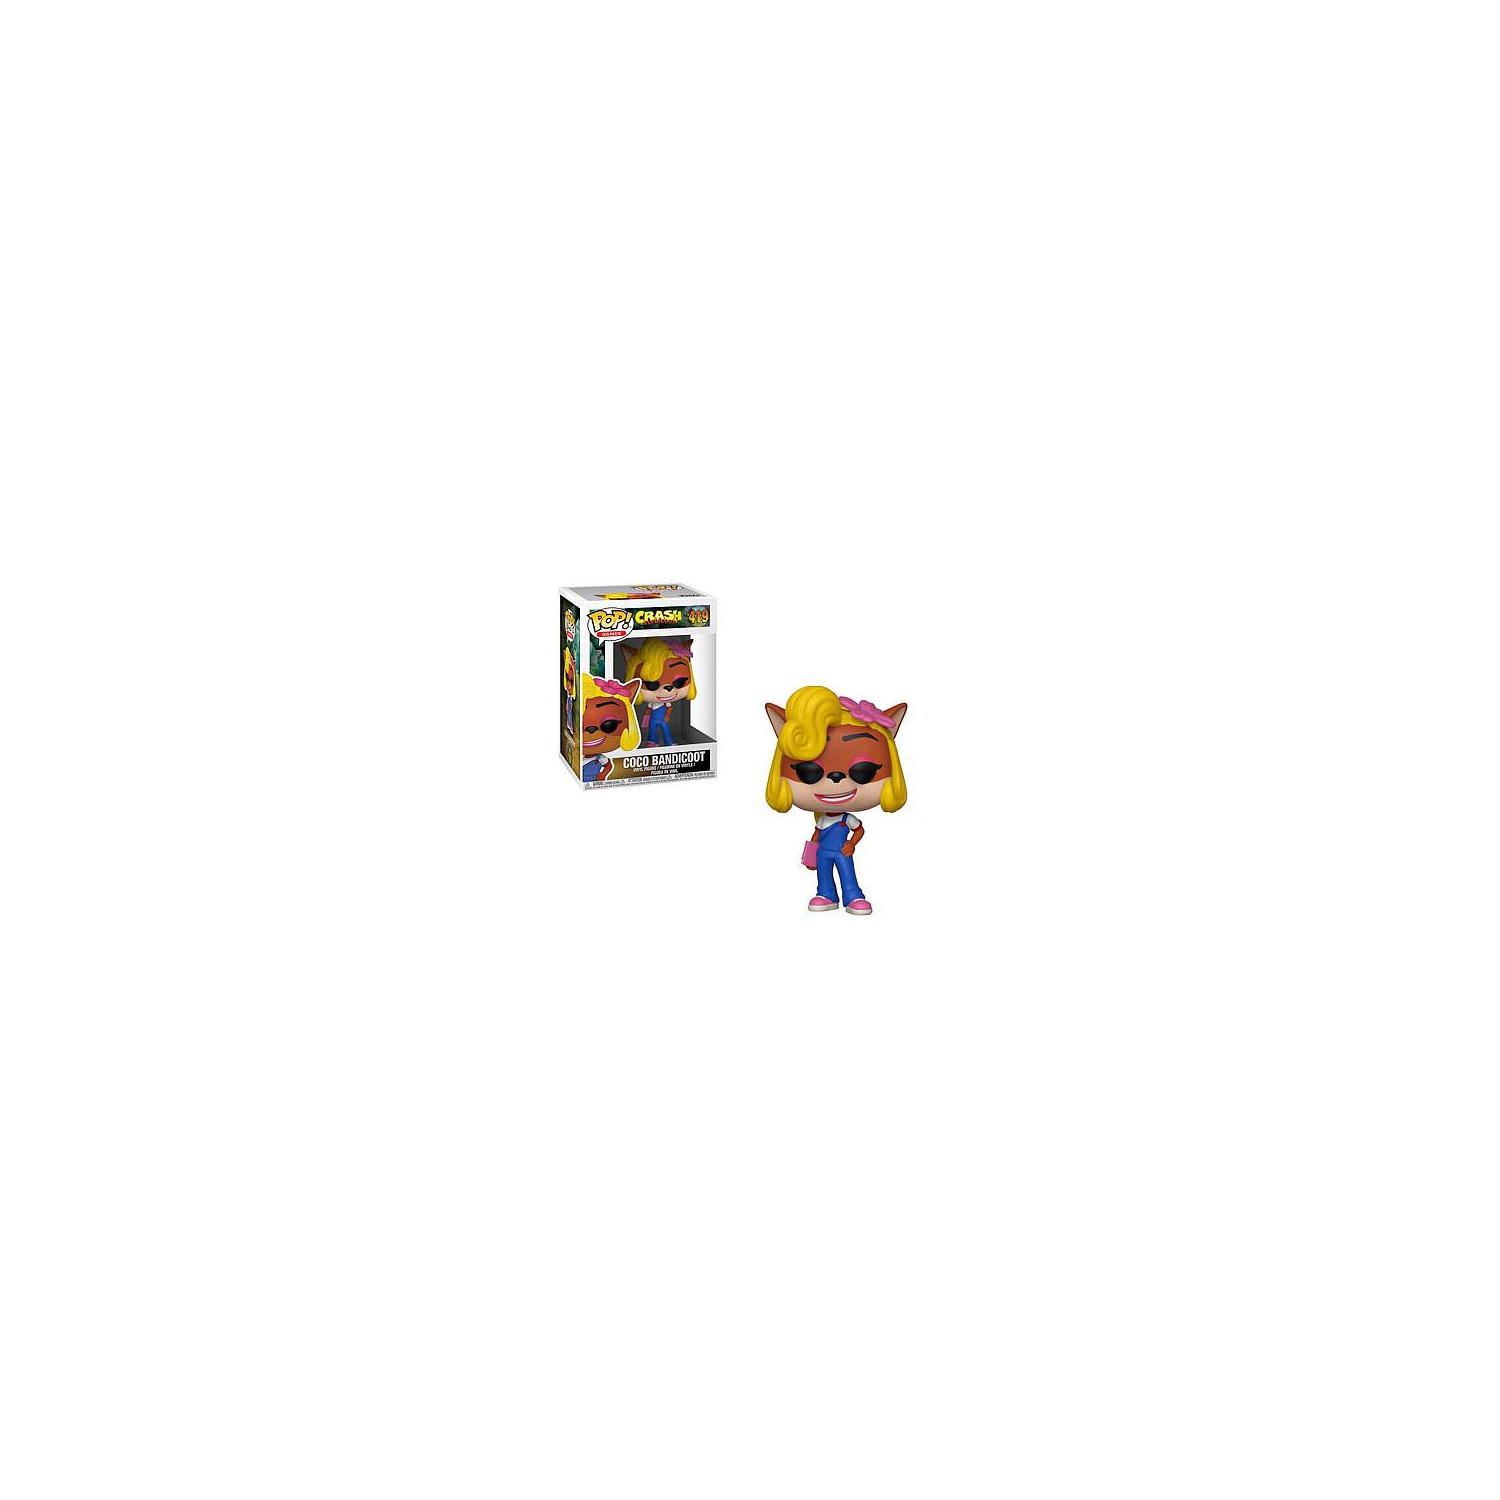 Pop! Games Crash Bandicoot Vinyl Figure Coco Bandicoot #419